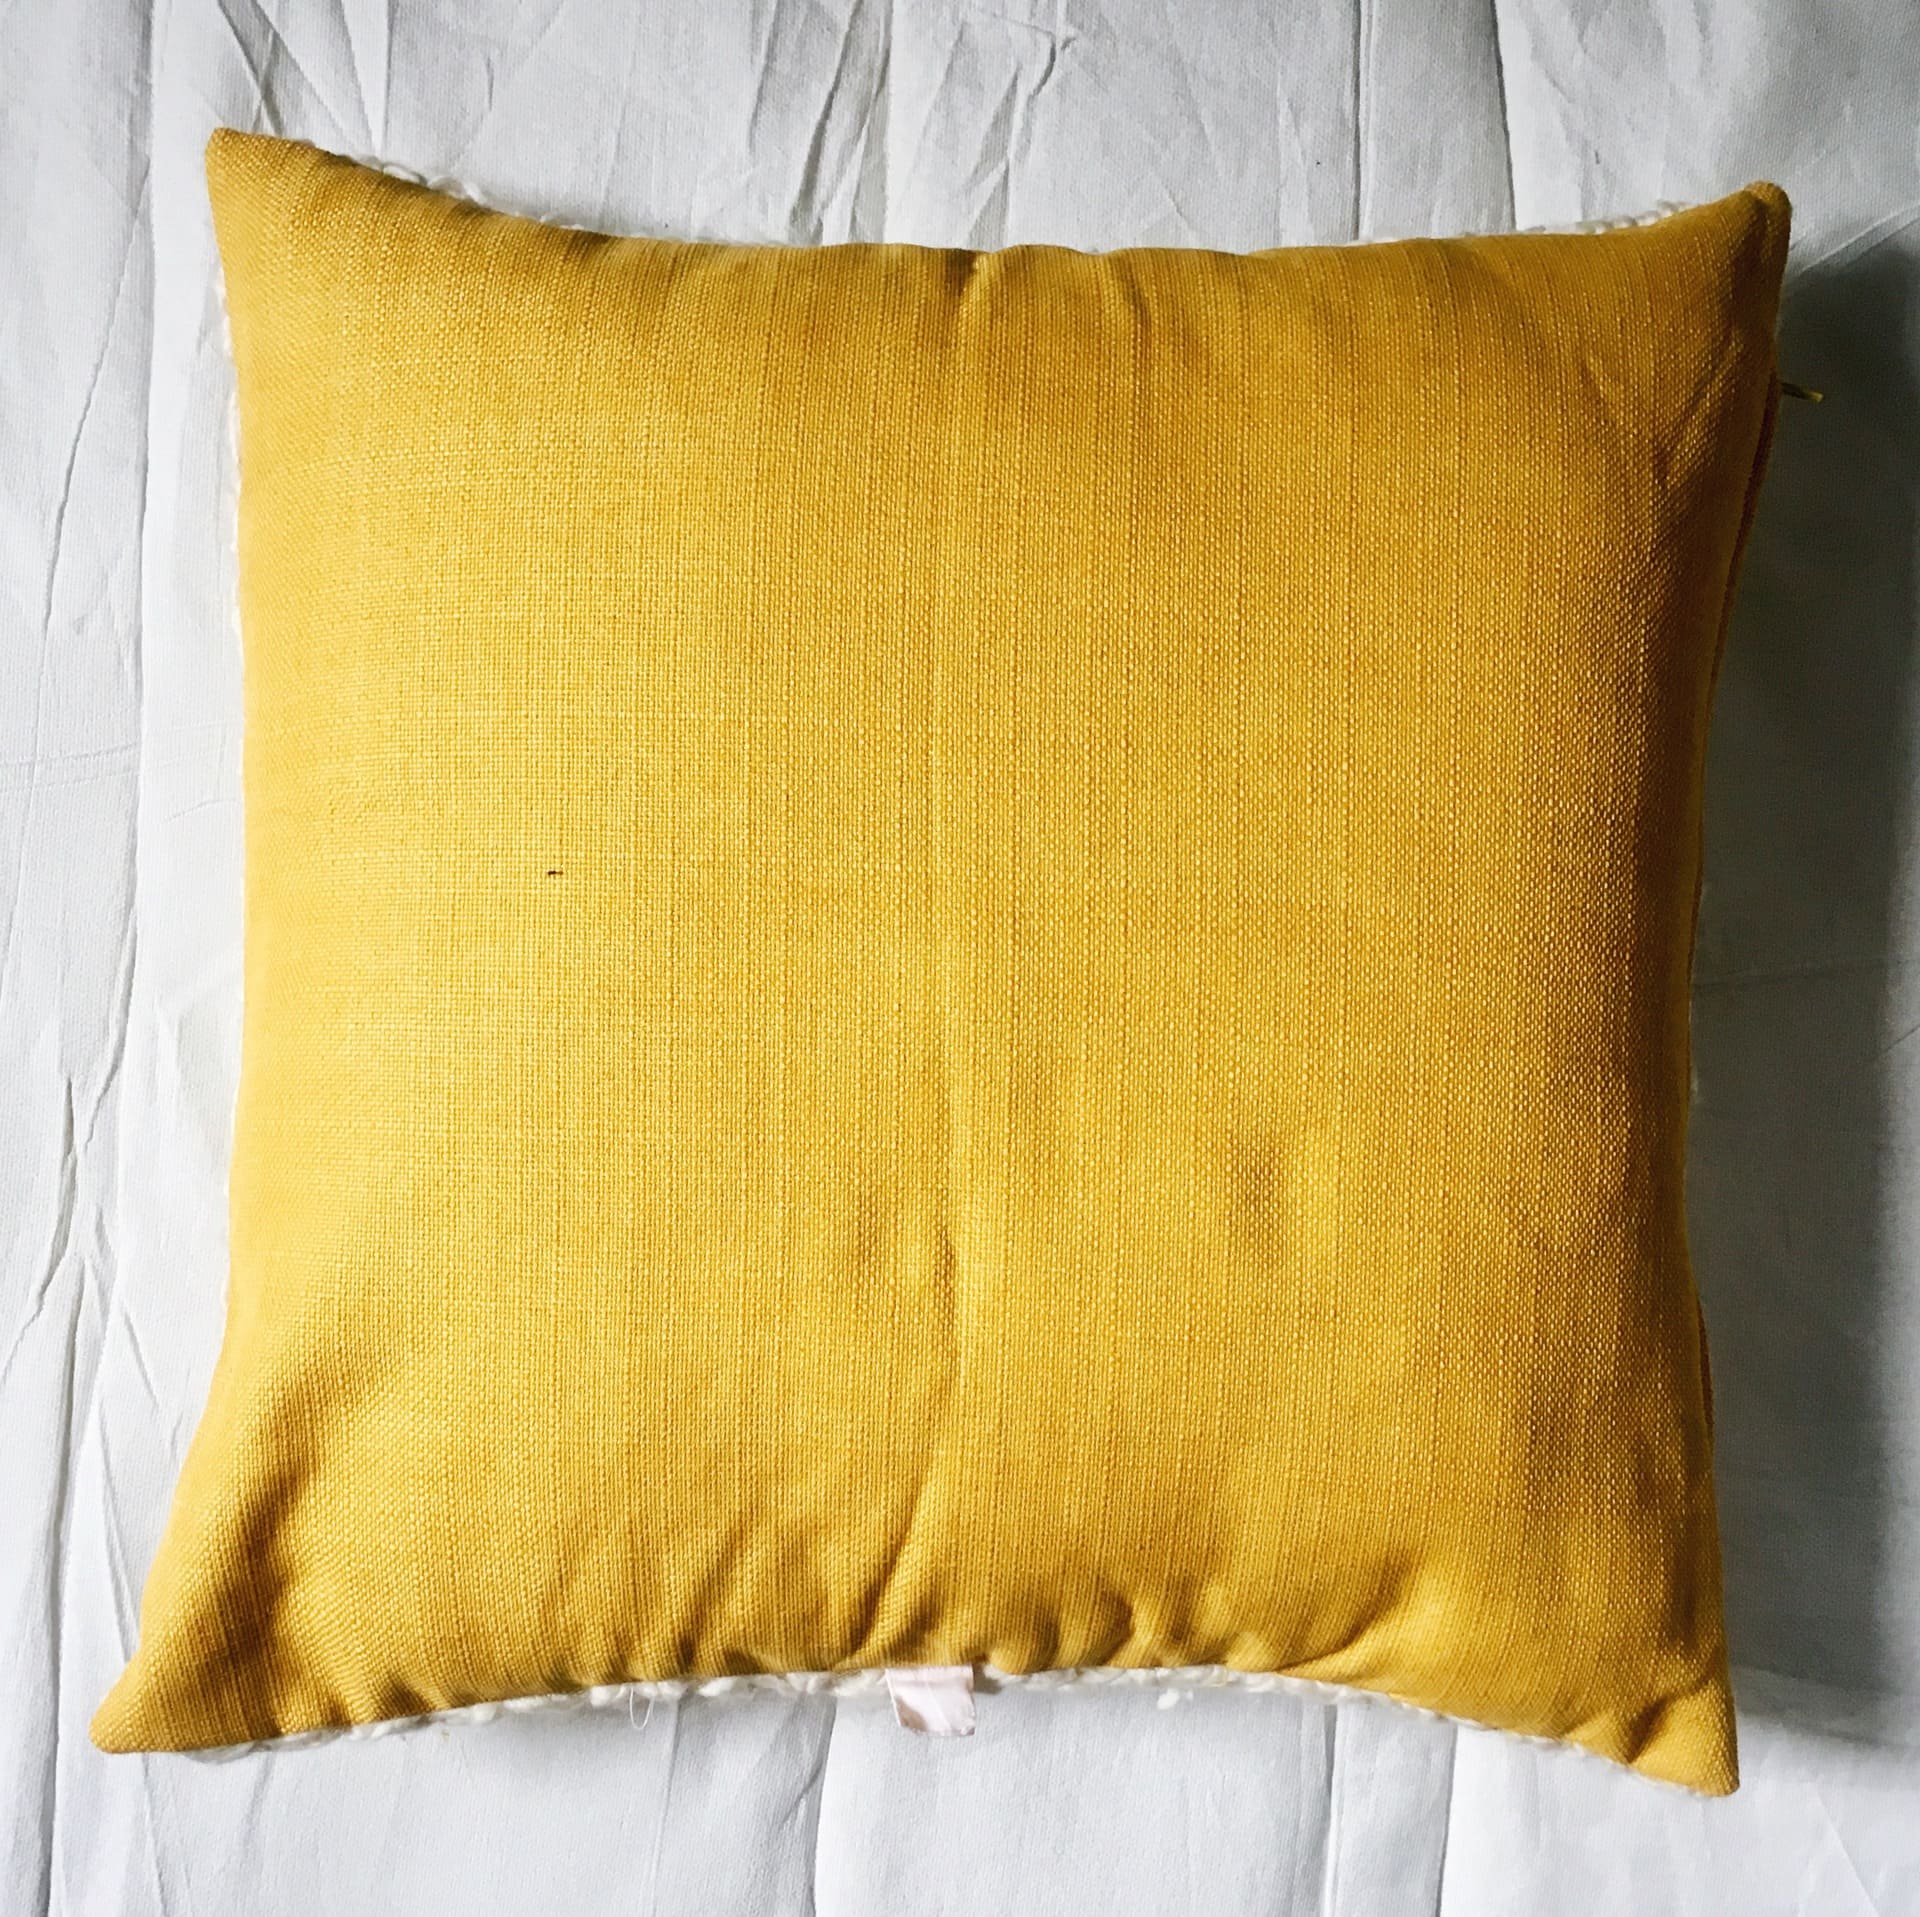 https://chronos-stores.com/wp-content/uploads/2018/05/crochet-throw-pillow-062.jpeg